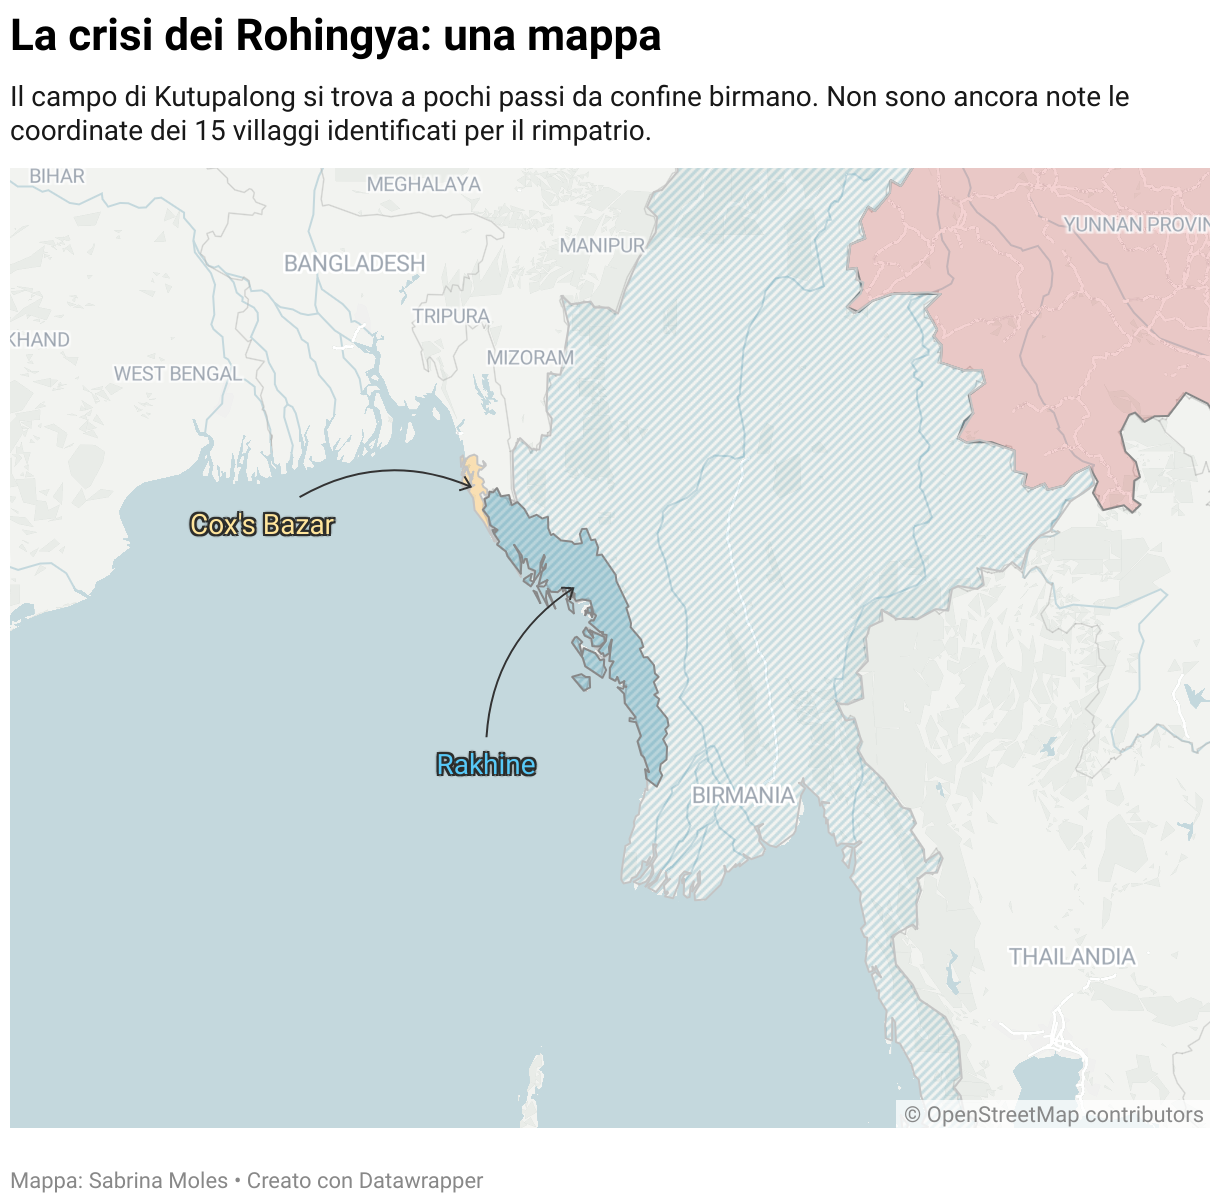 La mappa illustra l'area geografica oggetto dell'articolo. Il campo profughi di Kutupalong si trova lungo il confine tra Bangladesh e Myanmar, a nord dello Stato del Rakhine.